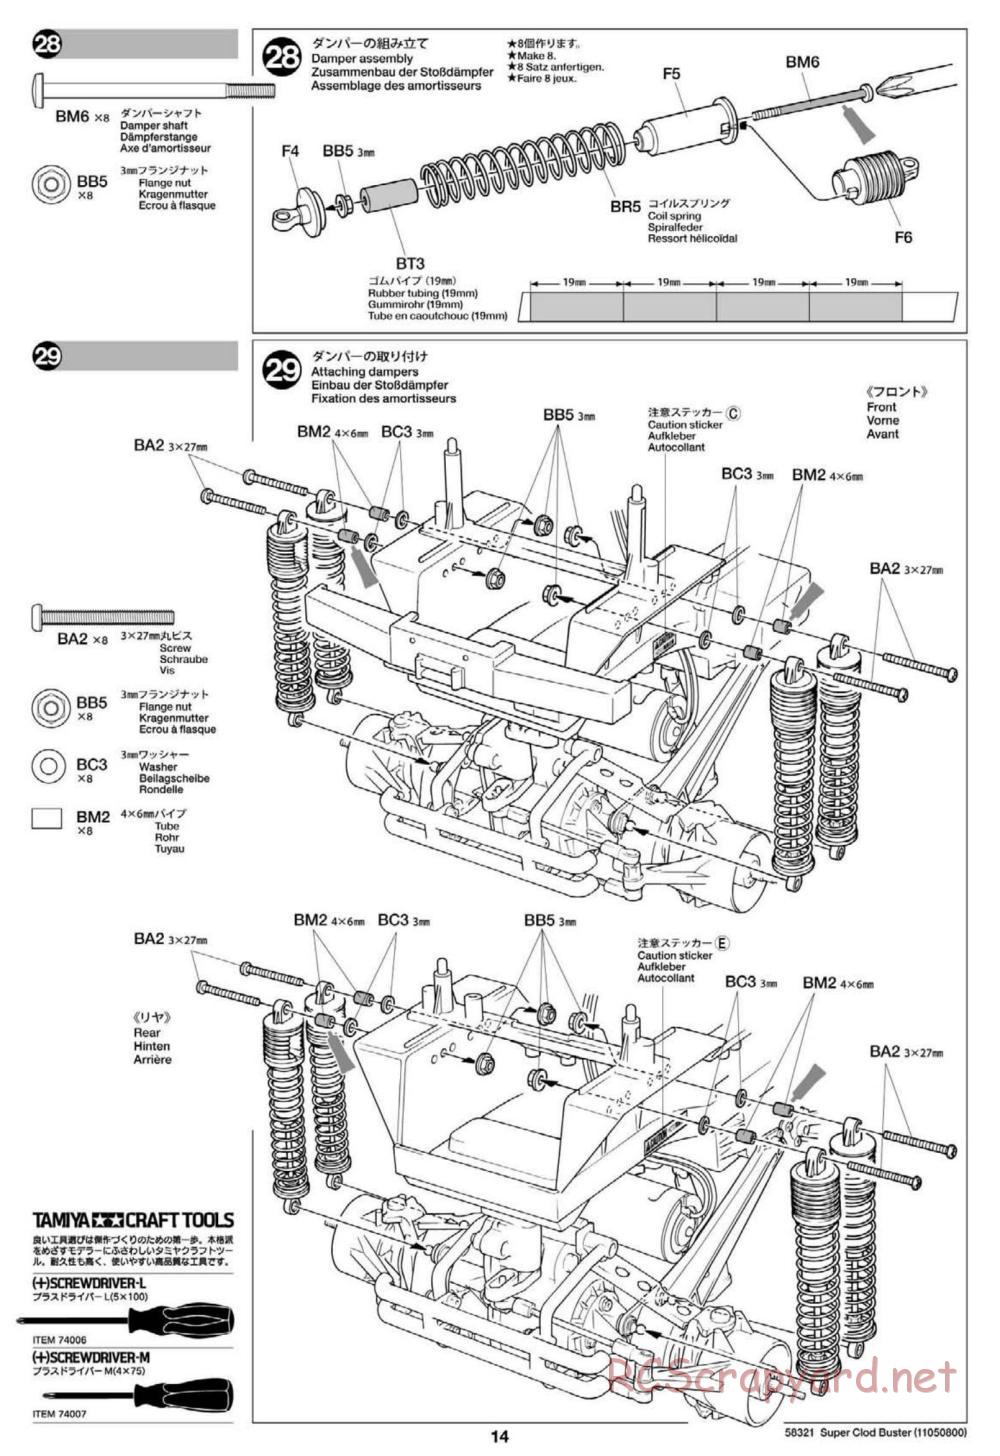 Tamiya - Super Clod Buster Chassis - Manual - Page 14